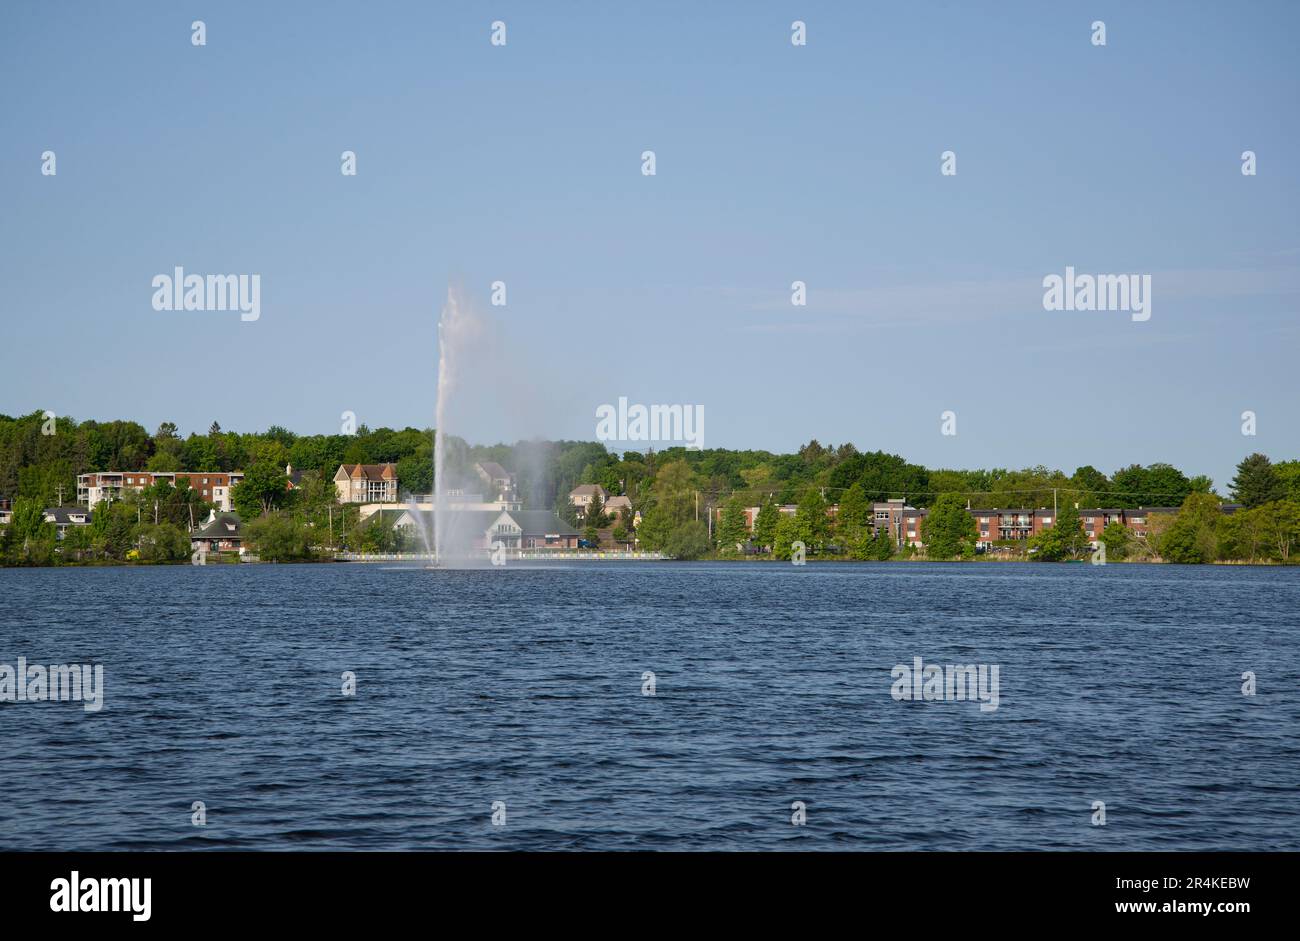 Fontaine sur le lac Boivin Granby Québec Canada Foto Stock